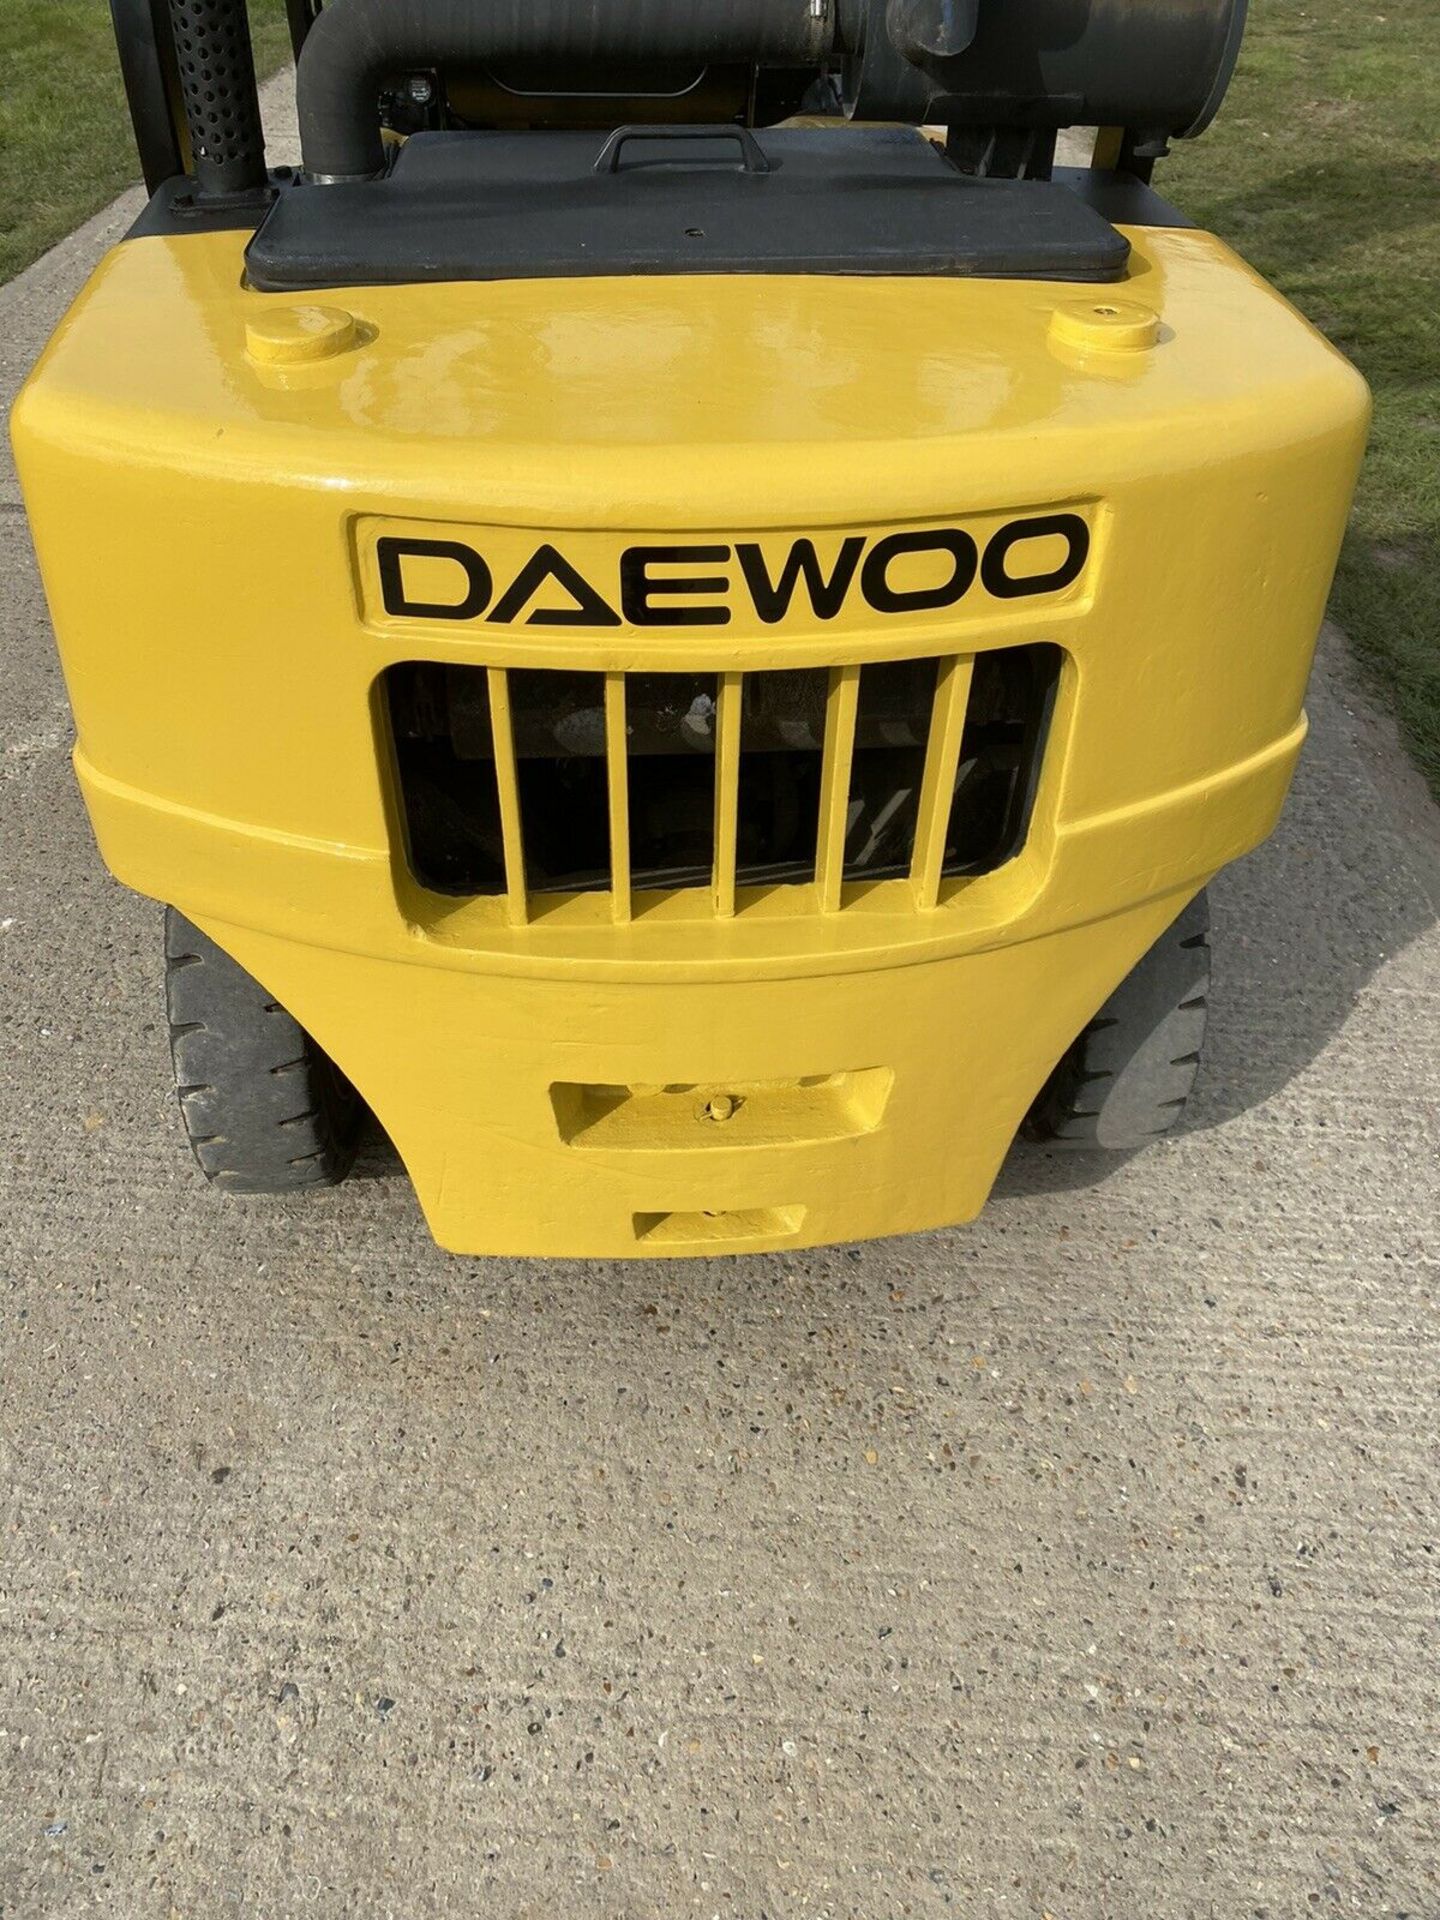 Daewoo diesel forklift - Image 3 of 5